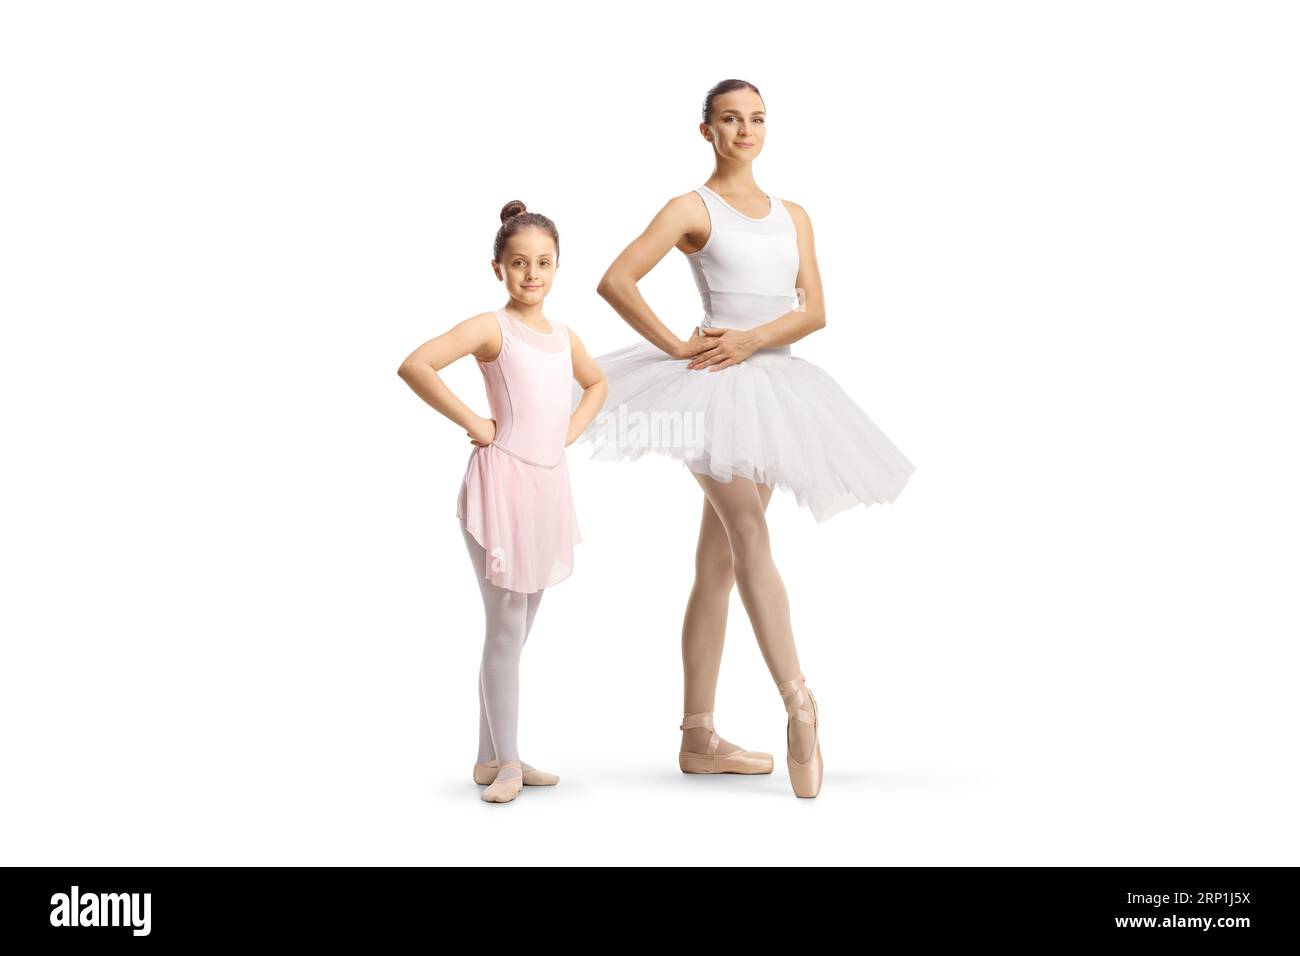 Portrait einer kleinen Mädchen-Ballerina, die neben einer professionellen Balletttänzerin steht, isoliert auf weißem Hintergrund Stockfoto